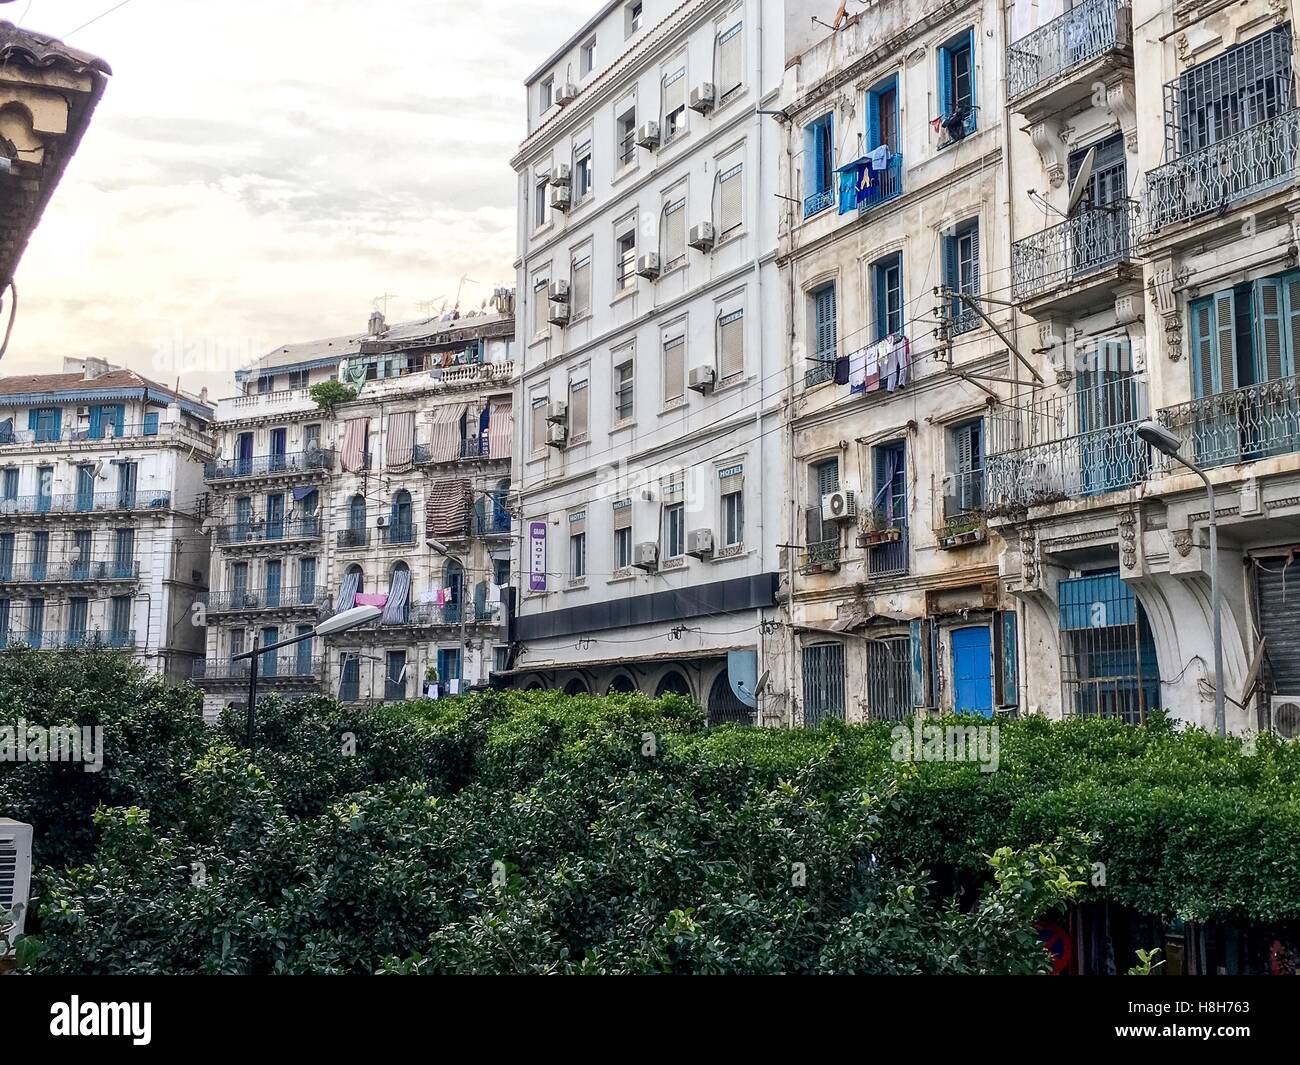 Côté colonial français de la ville de Alger Algérie.ville moderne a beaucoup de vieux bâtiments de type français. Banque D'Images